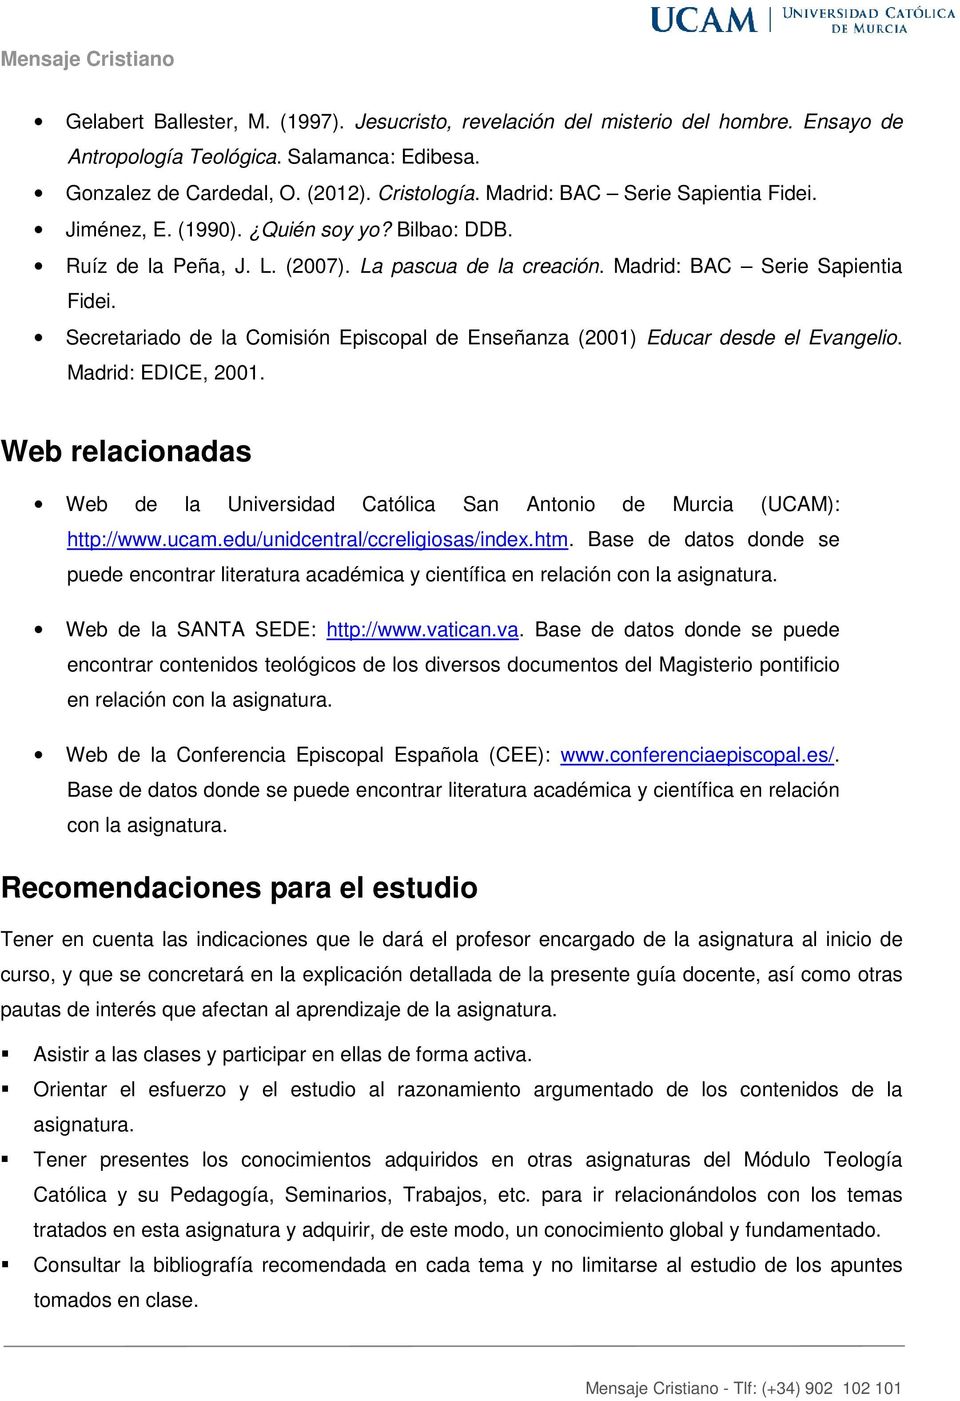 Secretariado de la Comisión Episcopal de Enseñanza (2001) Educar desde el Evangelio. Madrid: EDICE, 2001. Web relacionadas Web de la Universidad Católica San Antonio de Murcia (UCAM): http://www.ucam.